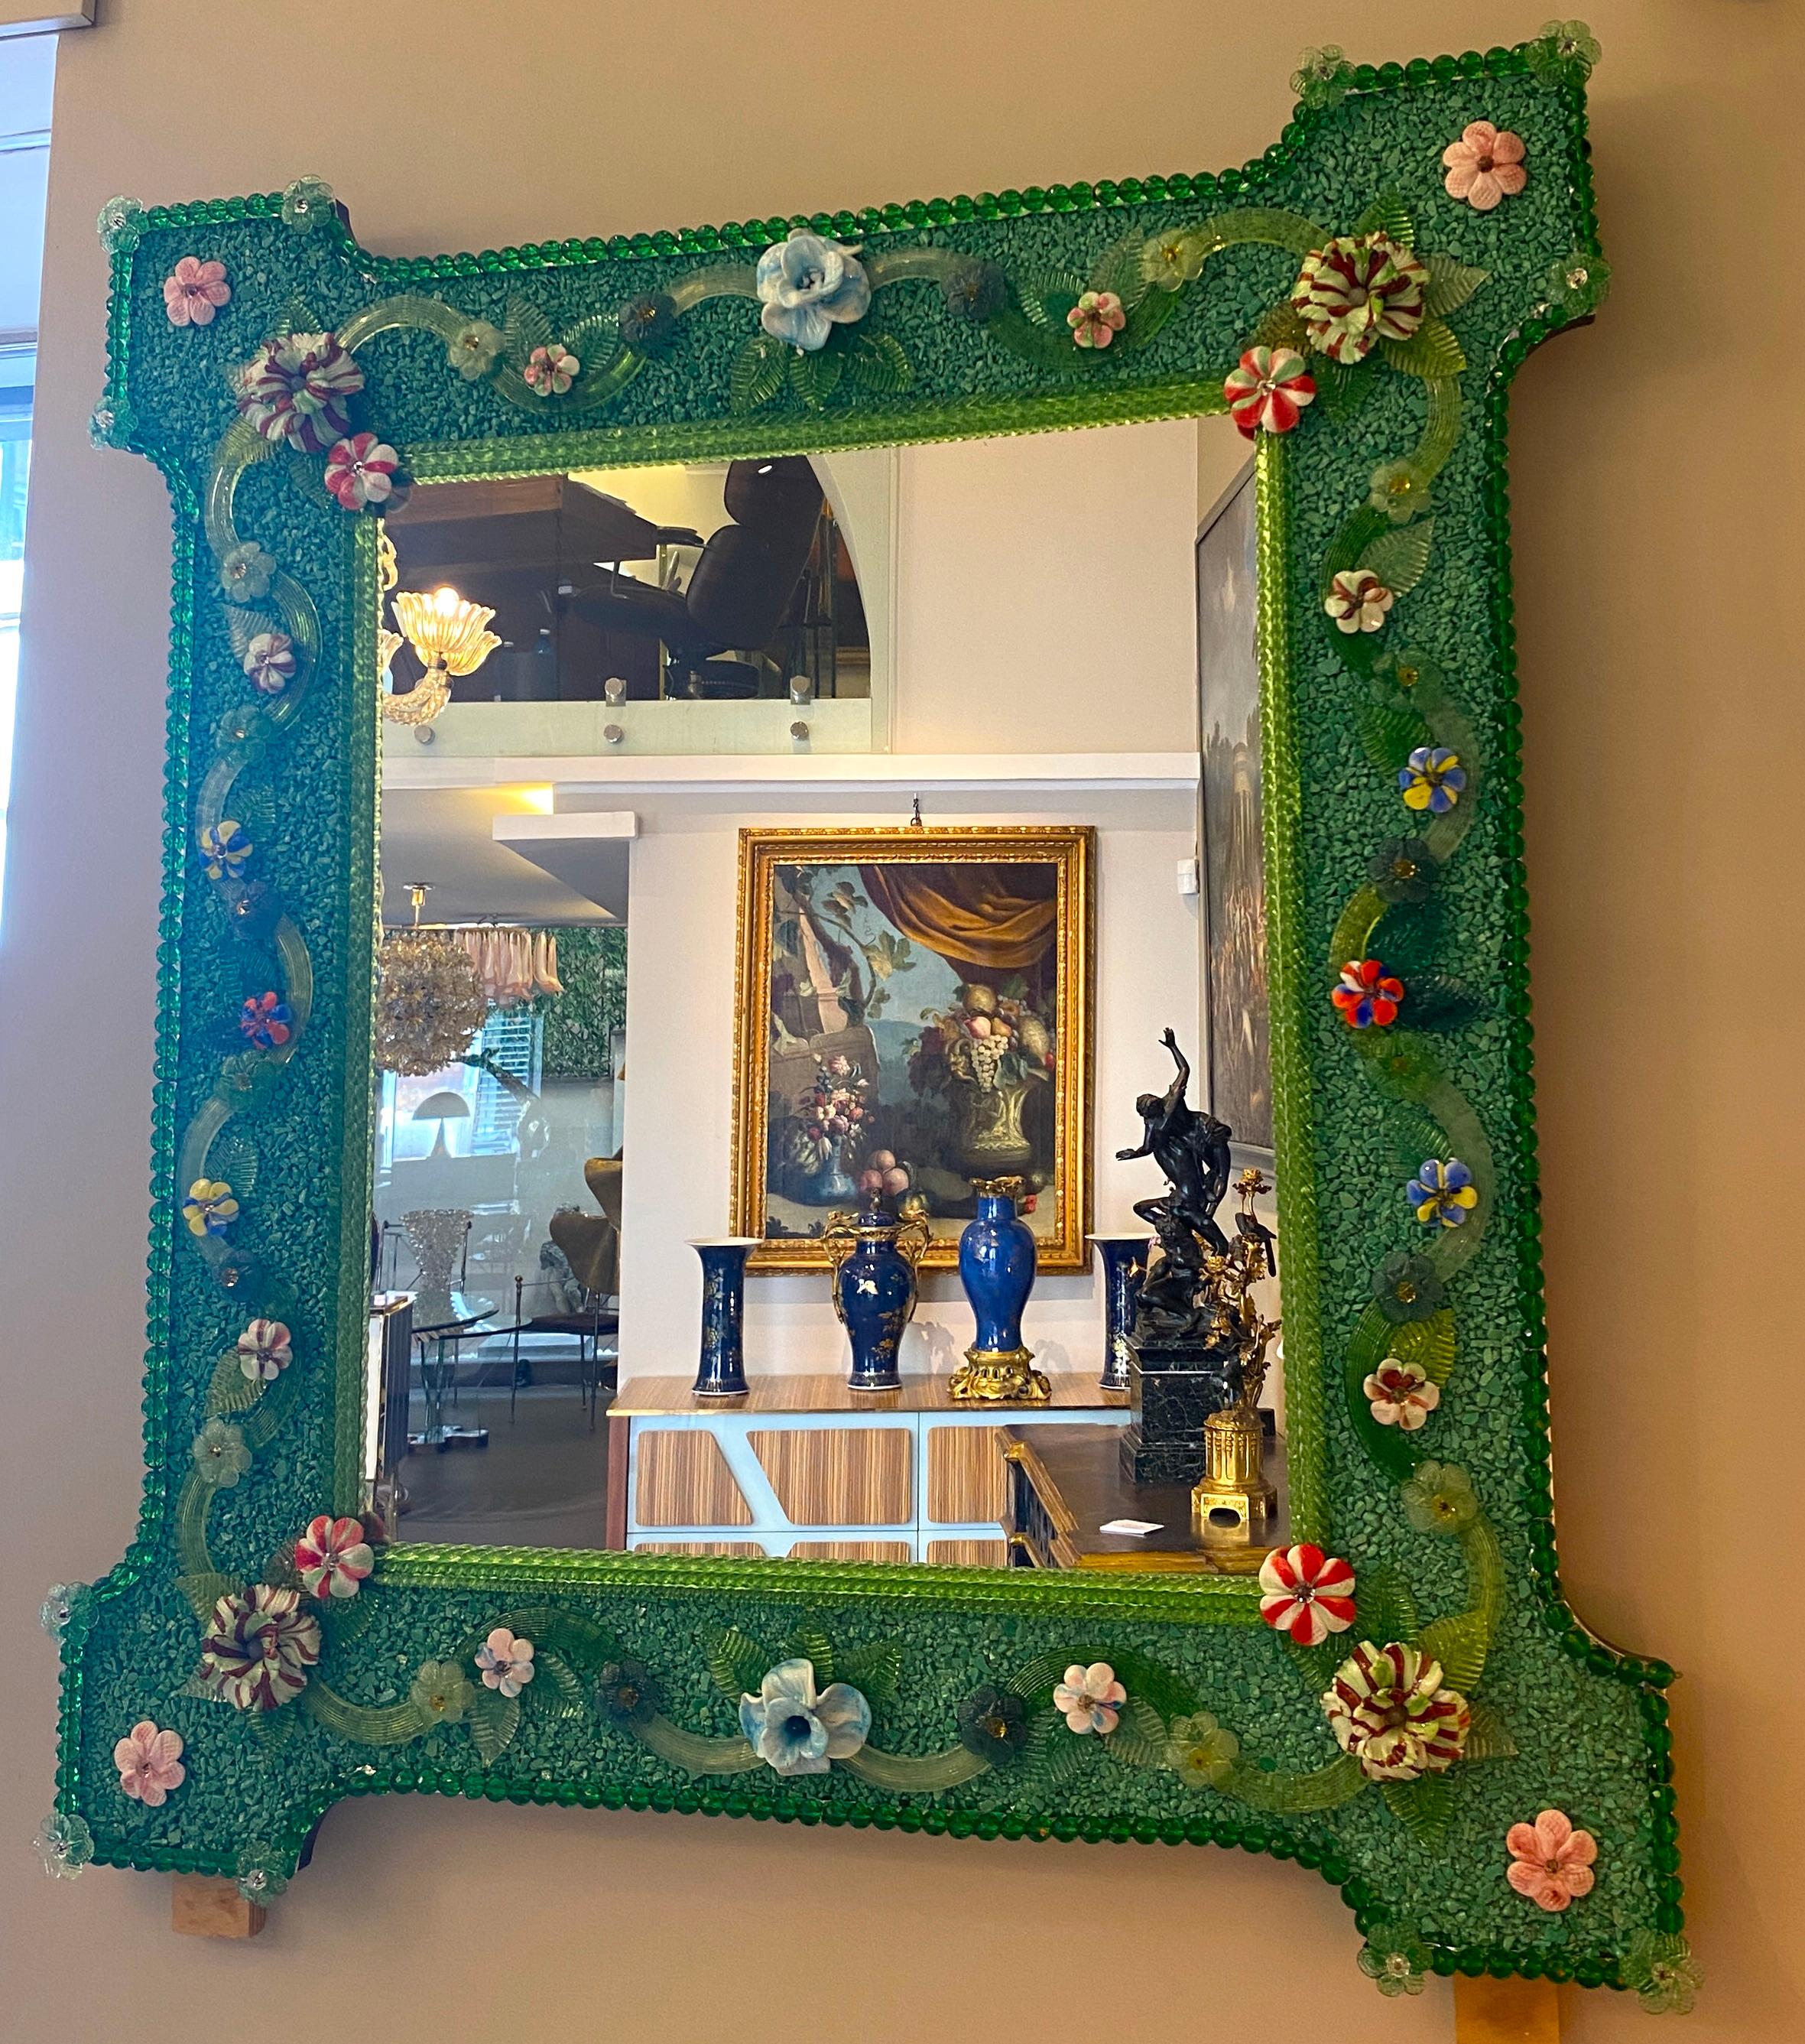 Charmant miroir vénitien avec cadre vert. Le long des bords du cadre se trouvent des accents de corde en verre vert et de nombreuses fleurs multicolores en verre pasta vitrea.
Exécuté par le grand maître de Murano.
Excellent état.
  